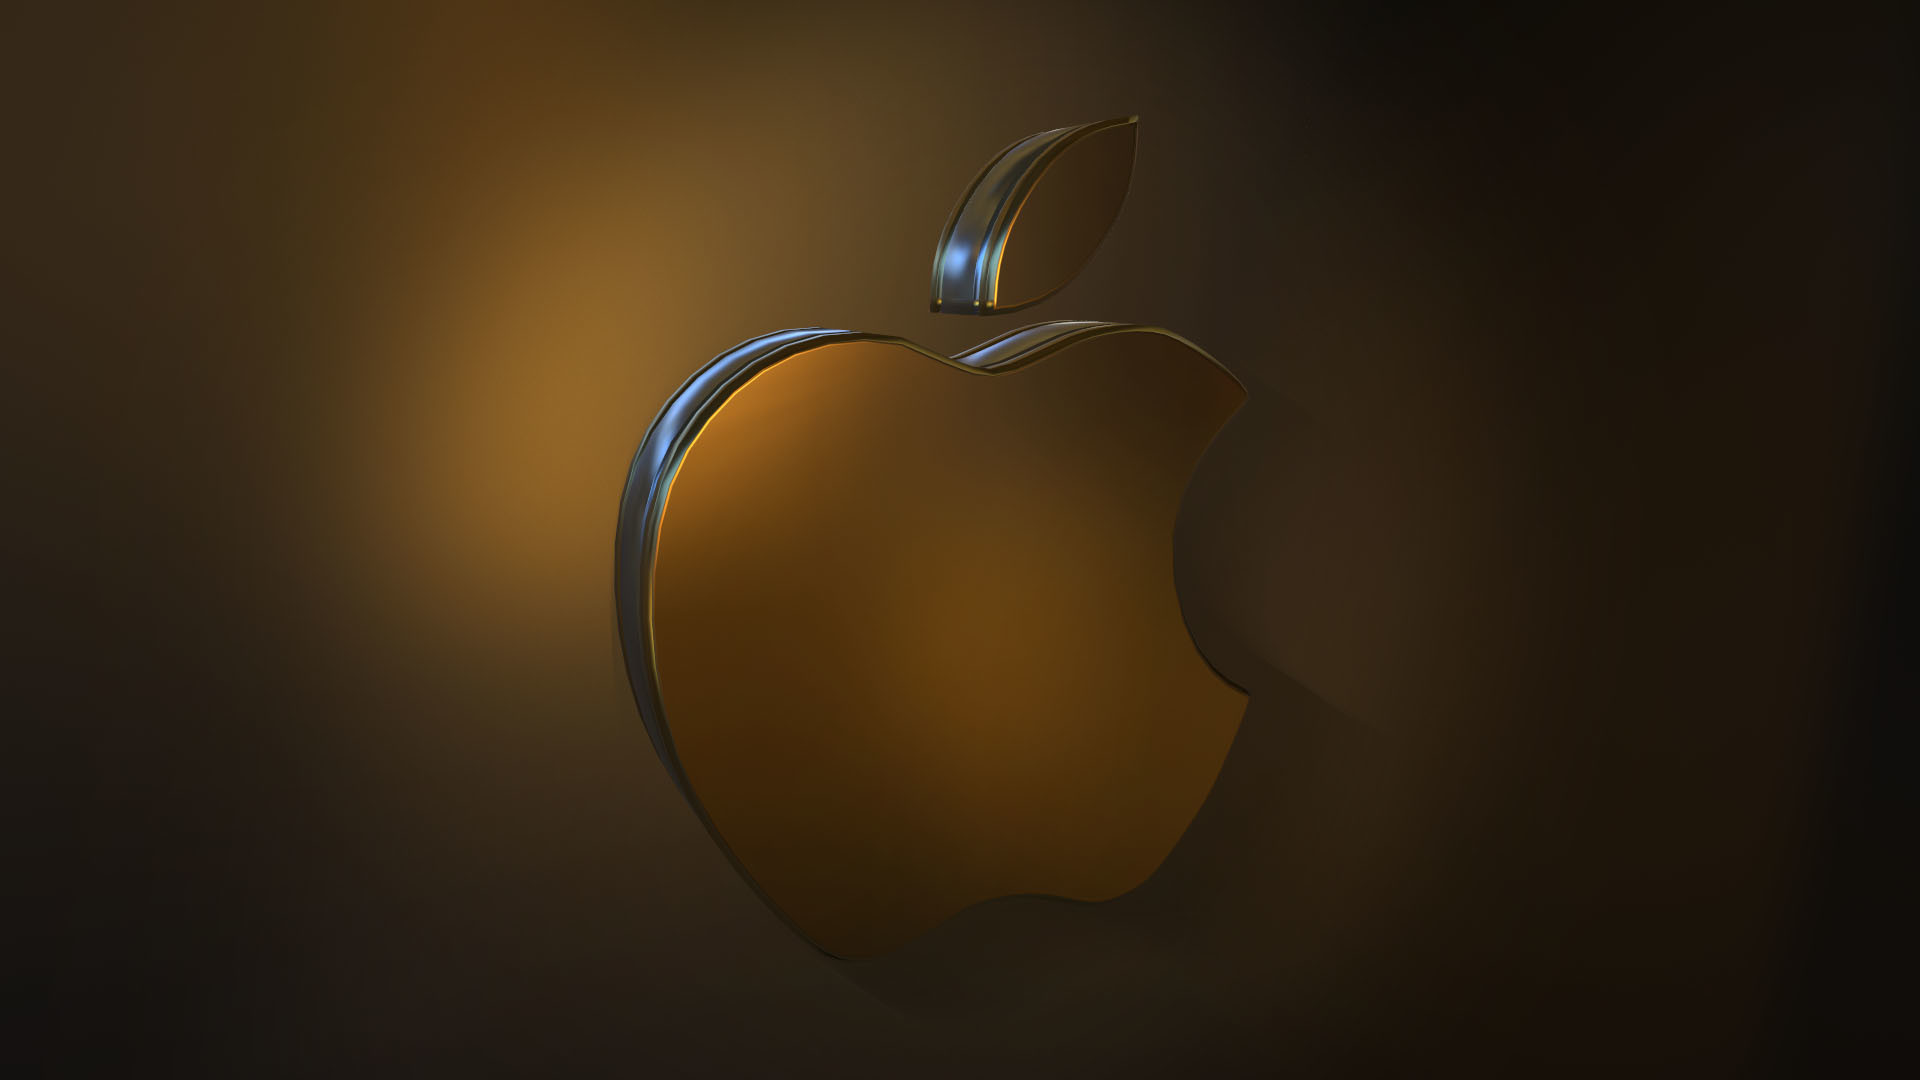 ArtStation - Apple Logo wallpaper